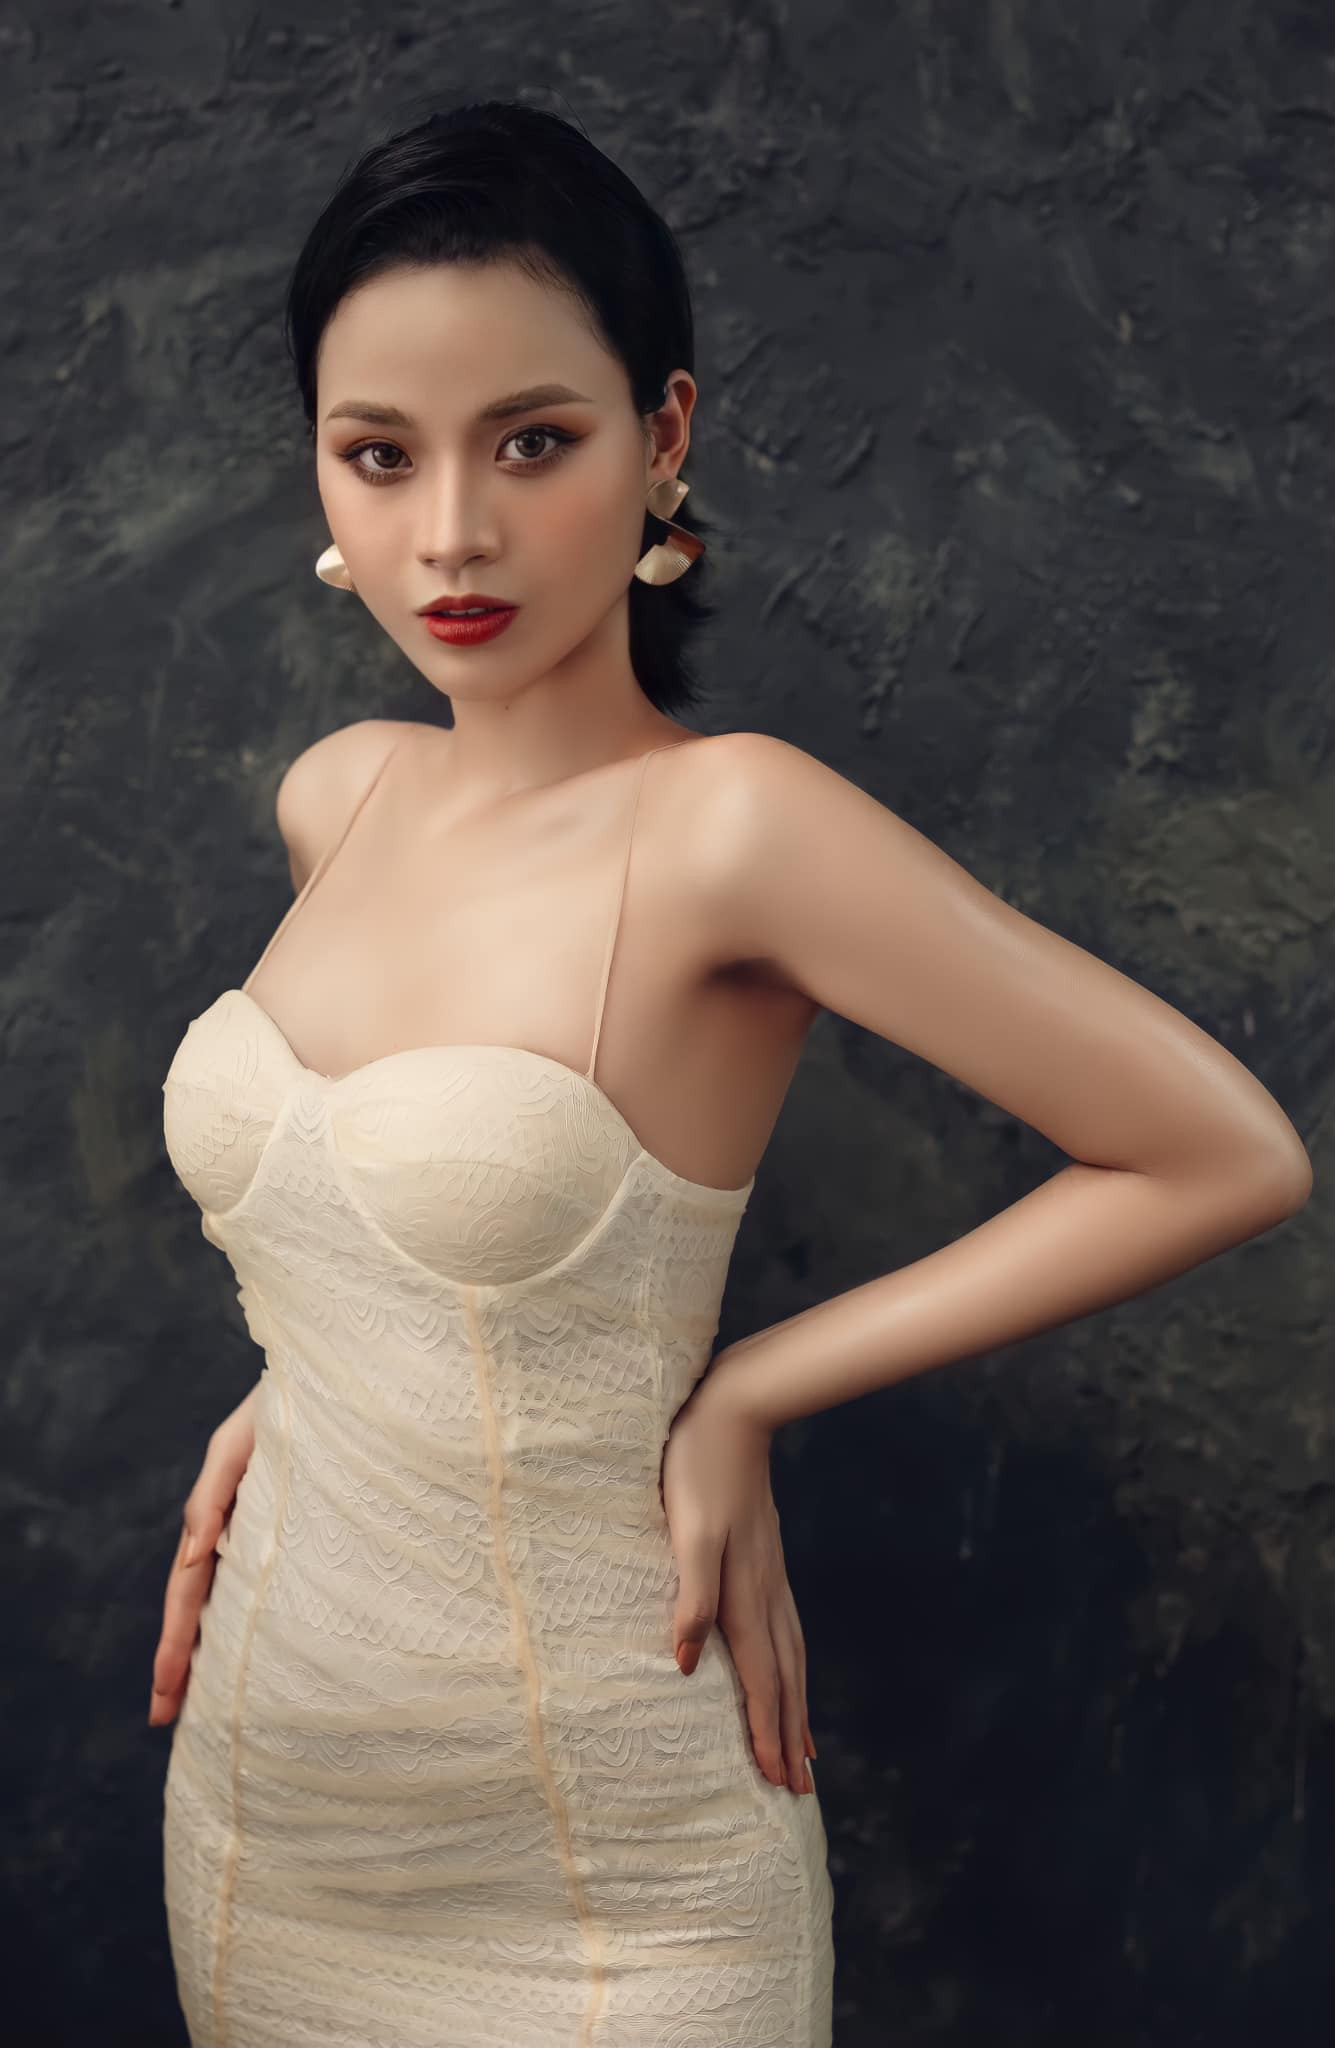 Hoa khôi Ngoại thương từng mắc ung thư vú dự thi Miss World Việt Nam 2022: Mình muốn bản thân được một lần sống hết mình, làm điều mình muốn trong cuộc đời hữu hạn - Ảnh 4.